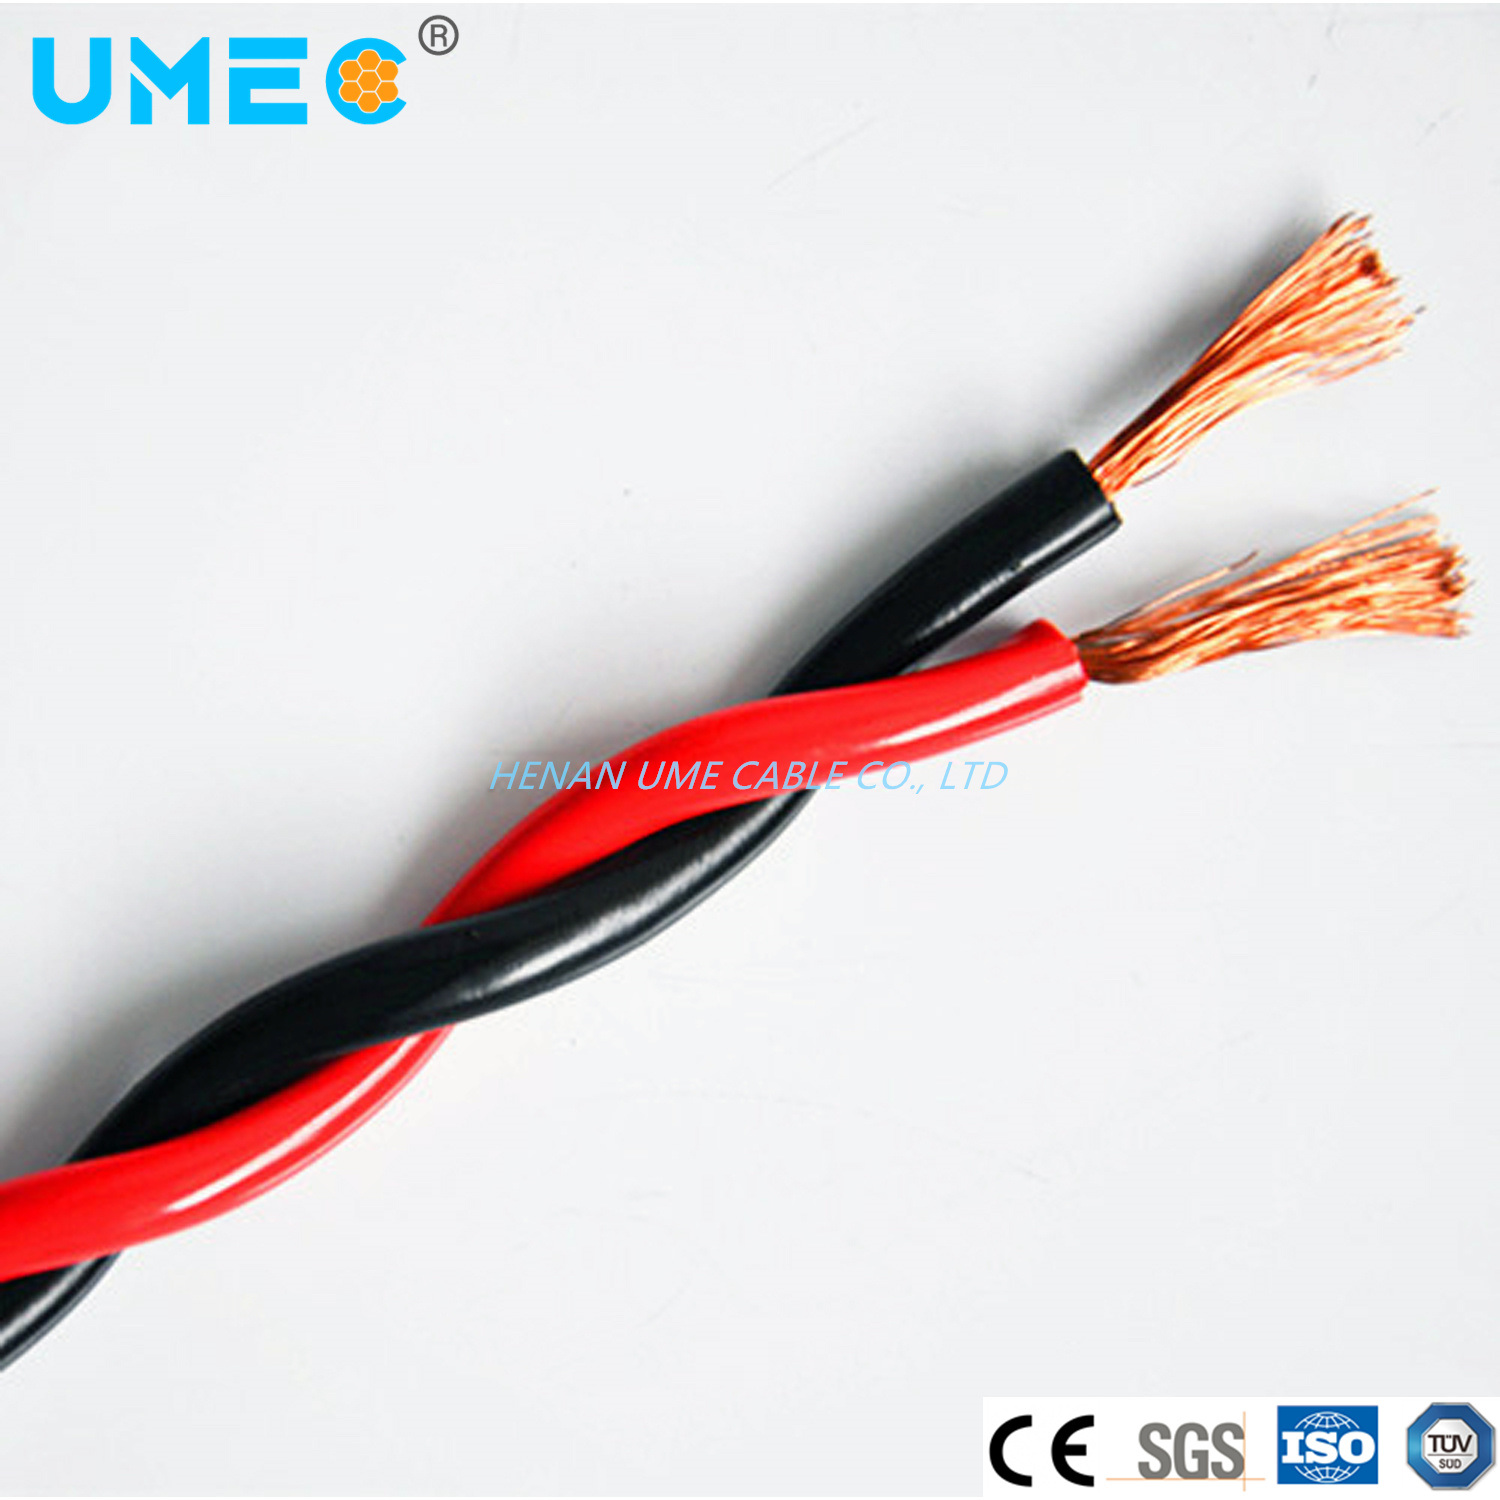 
                Freie Probe elektrische Kabel Draht 2c * 0,75/1,0/1,5/2,5/4,0/6,0/10mm2 blanke Kupferdraht Mit verschiedenen Farben RVS Draht und Kabel
            